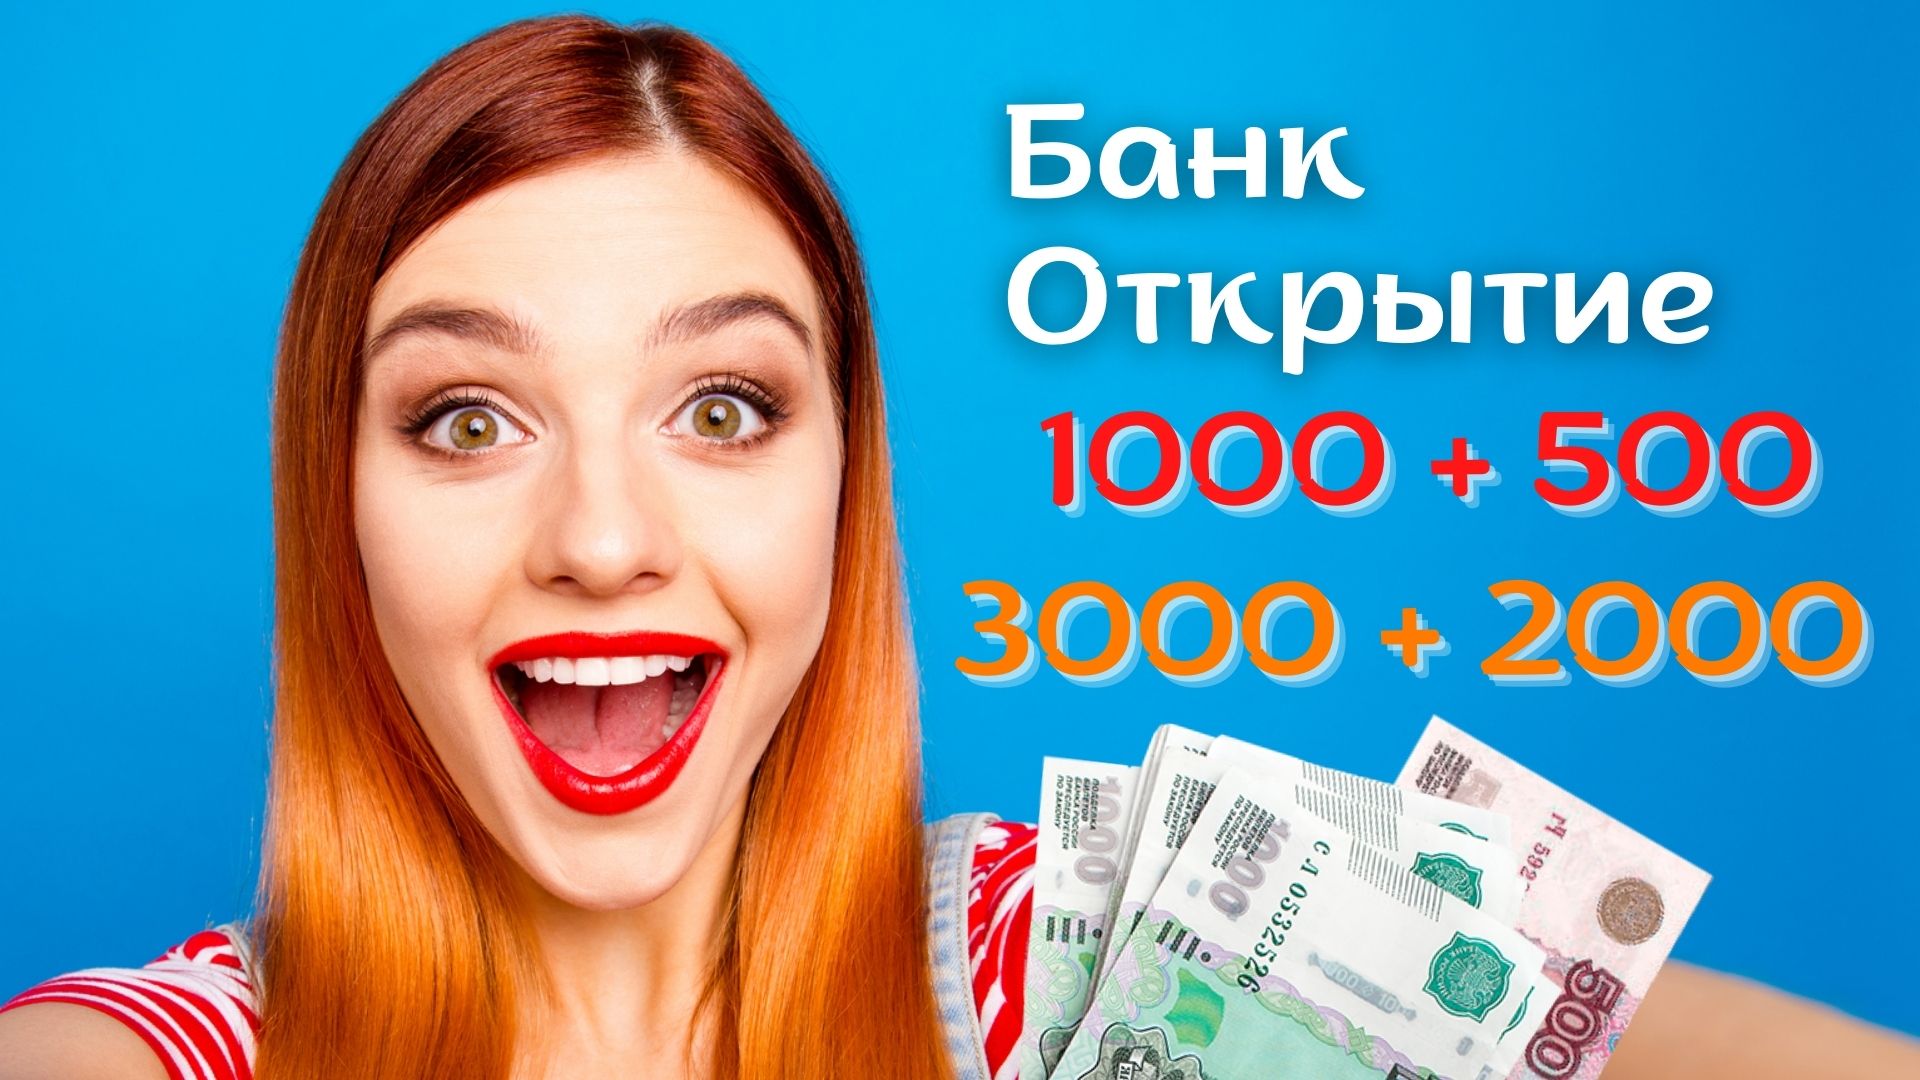 Банк Открытие платит по акции Приведи друга по 500 / 1000 / 2000 рублей / 3000 за оформление карты